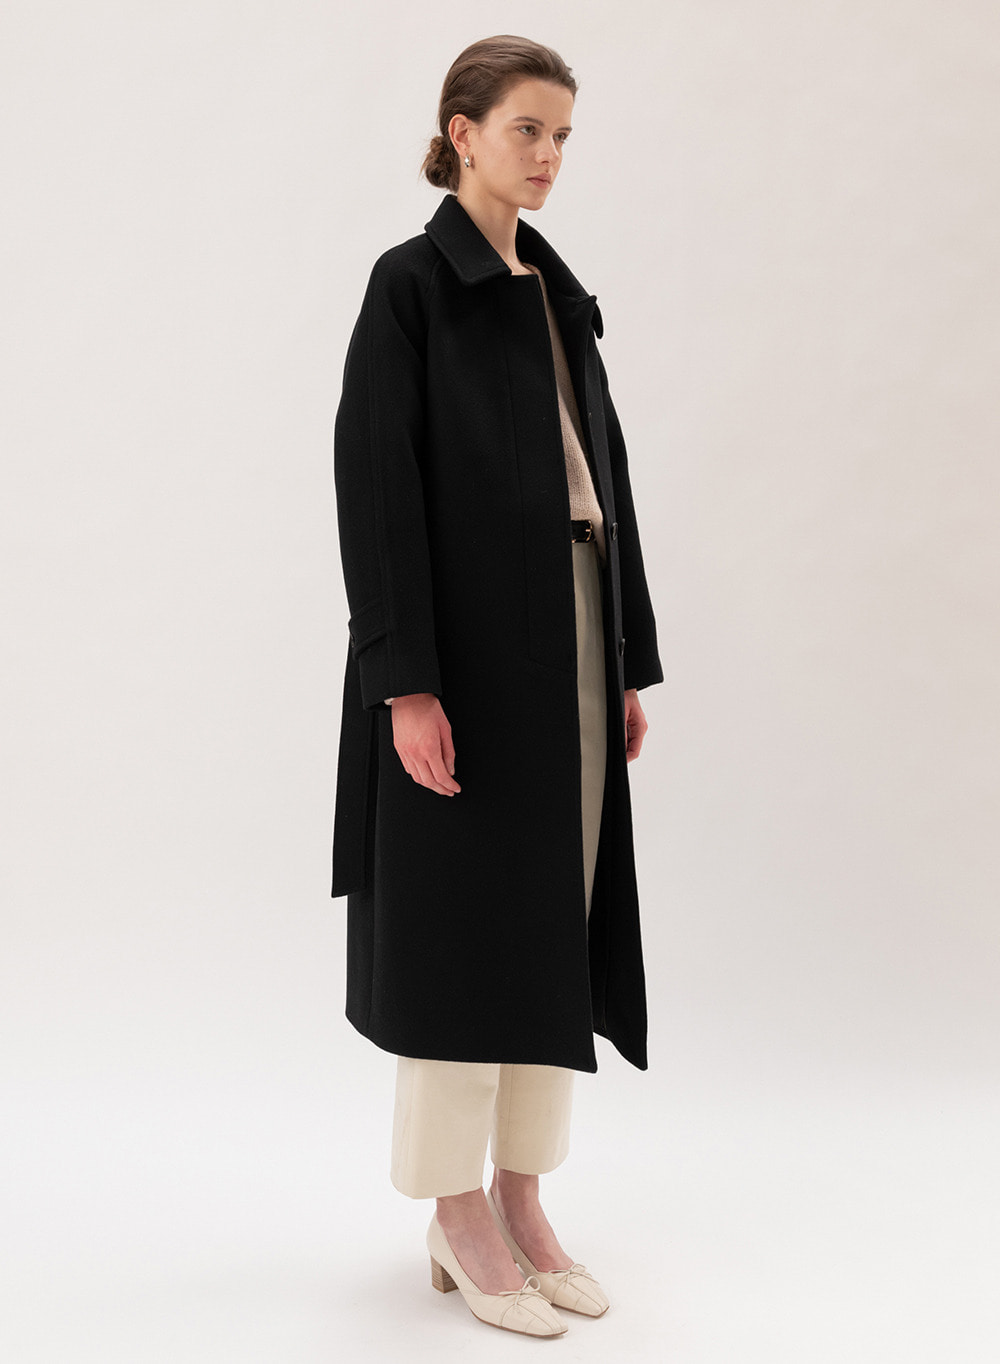 [FW20 ESSENTIAL] 캐시미어 Cashmere Single Coat Black